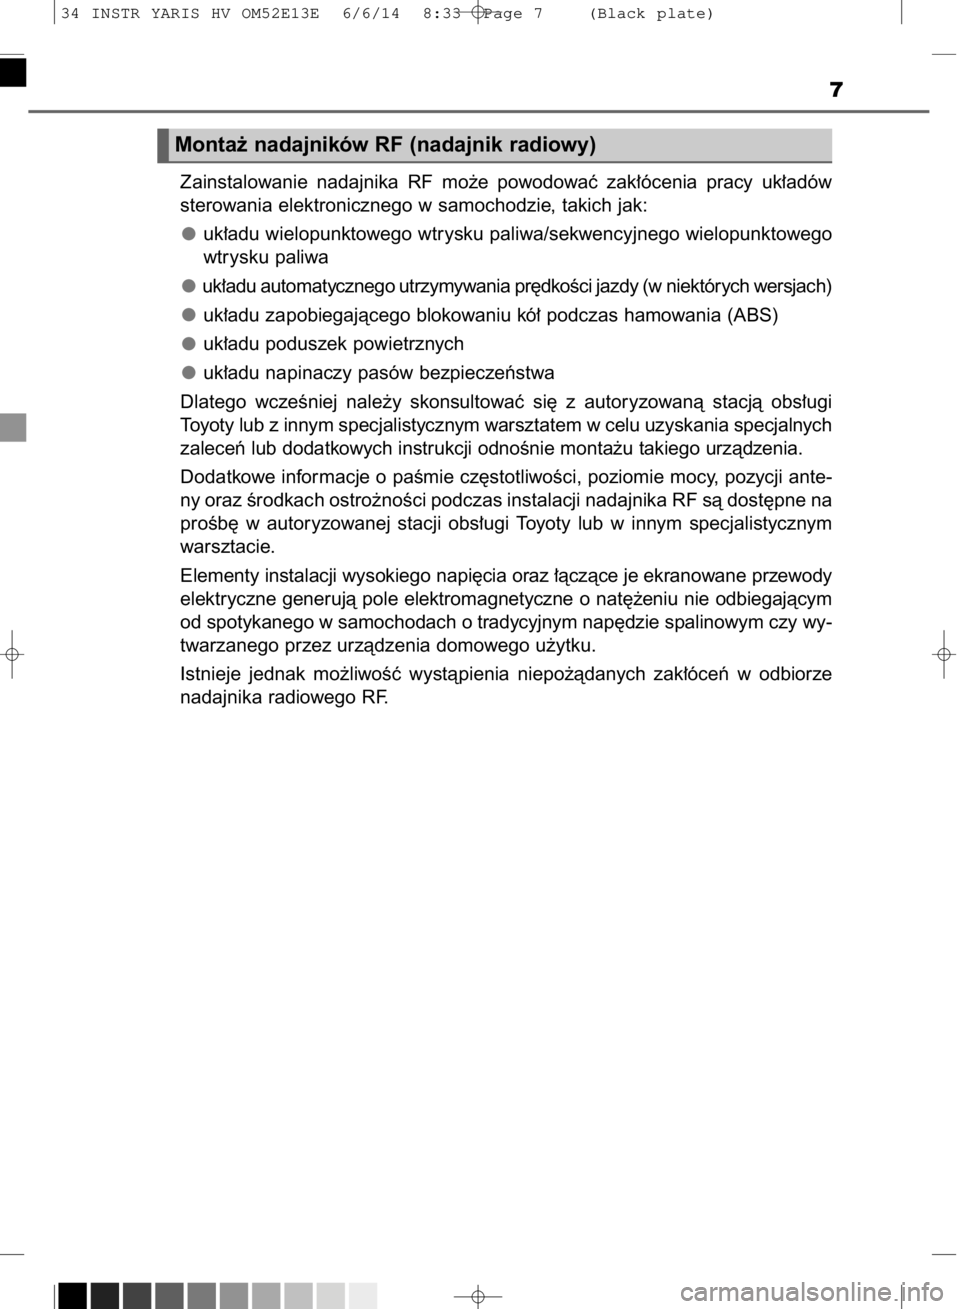 TOYOTA YARIS HYBRID 2014  Instrukcja obsługi (in Polish) 7
Monta˝ nadajników RF (nadajnik radiowy)
Zainstalowanie  nadajnika  RF  mo˝e  powodowaç  zak∏ócenia  pracy  uk∏adów
sterowania elektronicznego w samochodzie, takich jak:
uk∏adu wielopunkt